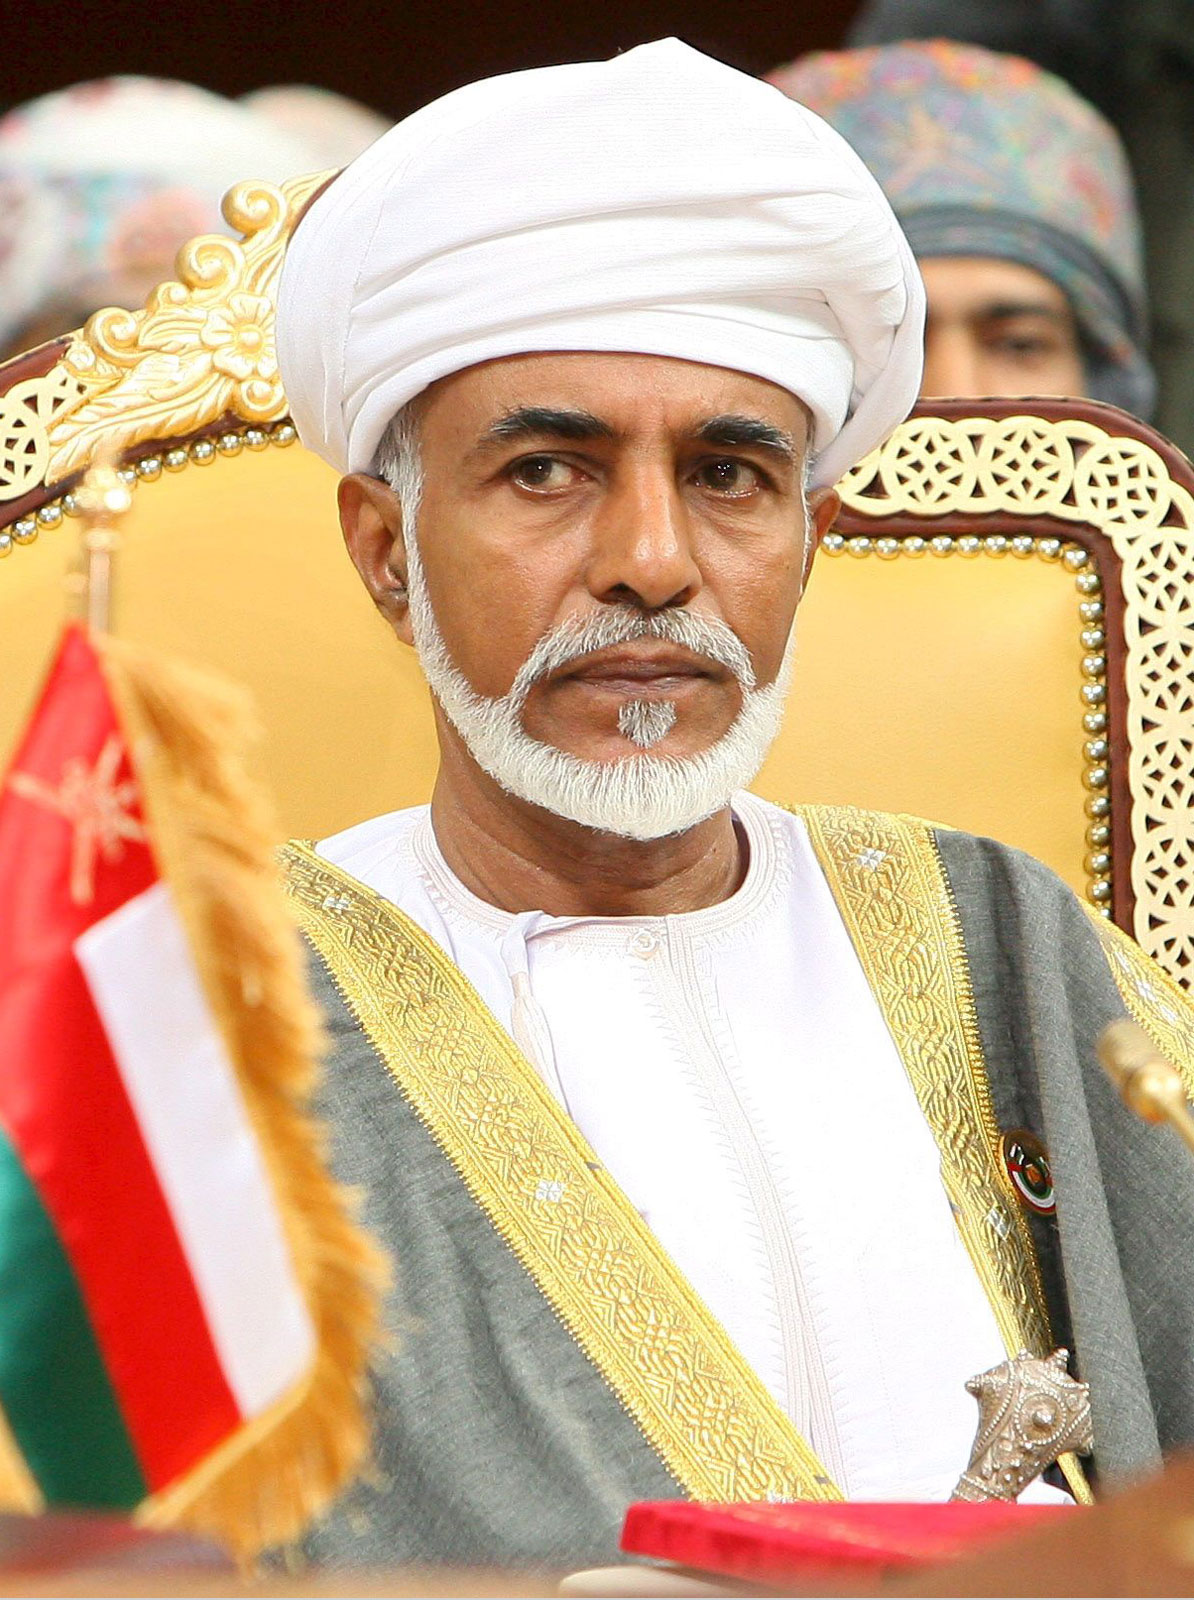 صحيفة "الوسط" الكويتية تختار جلالة السلطان قابوس بن سعيد شخصية 2019